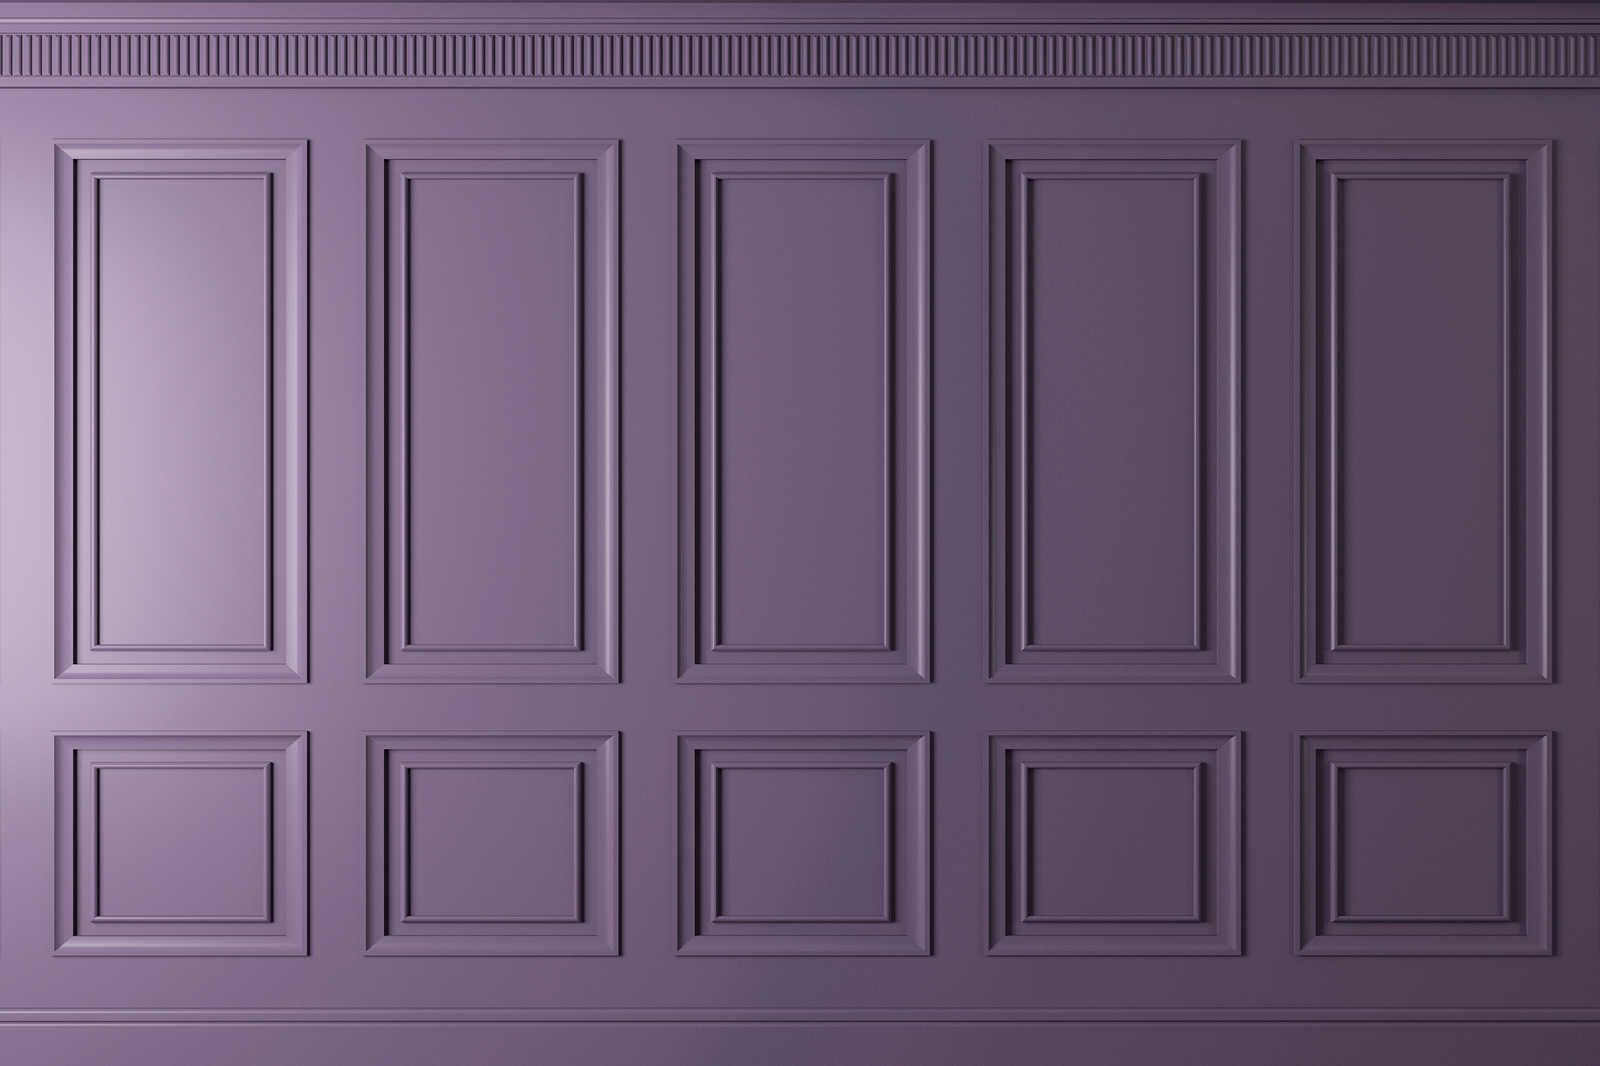             Kensington 3 - 3D Lienzo pintura paneles de madera púrpura oscuro, violeta - 0,90 m x 0,60 m
        